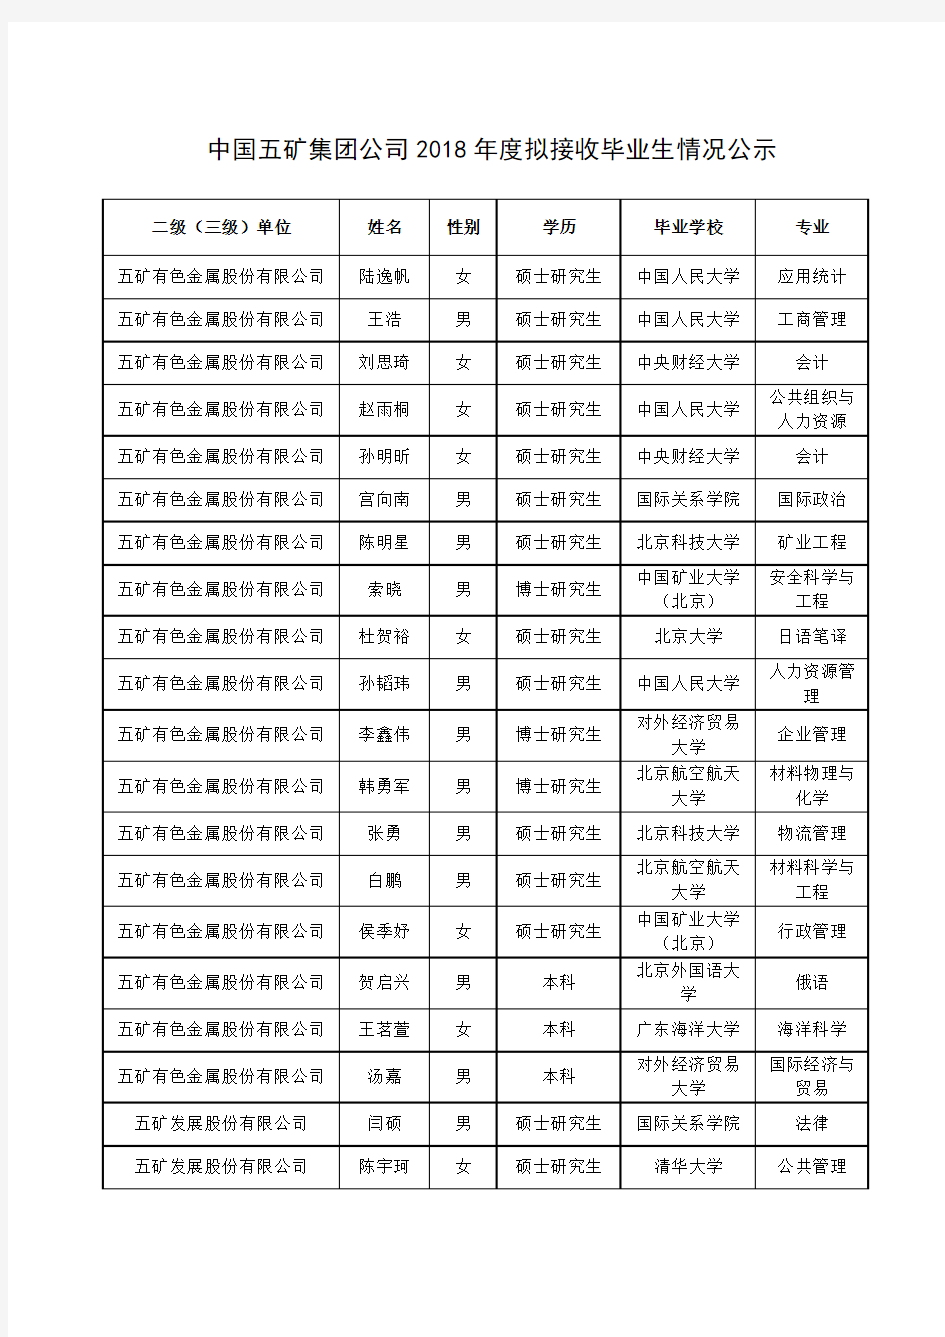 中国五矿集团公司2018年度拟接收毕业生情况公示【模板】